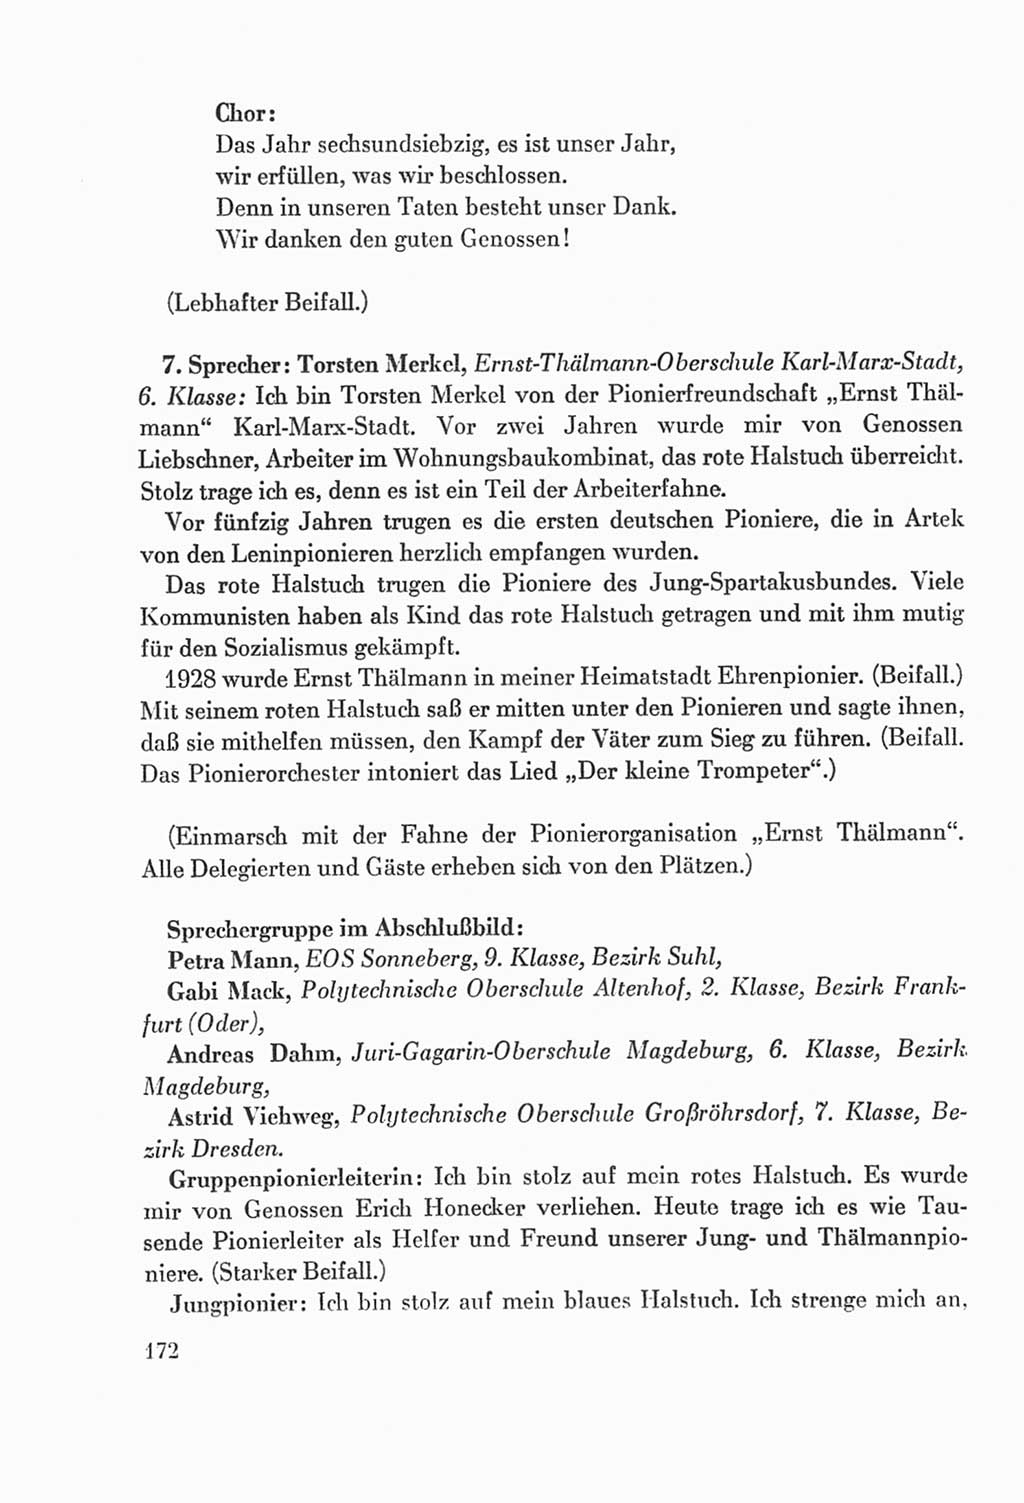 Protokoll der Verhandlungen des Ⅸ. Parteitages der Sozialistischen Einheitspartei Deutschlands (SED) [Deutsche Demokratische Republik (DDR)] 1976, Band 2, Seite 172 (Prot. Verh. Ⅸ. PT SED DDR 1976, Bd. 2, S. 172)